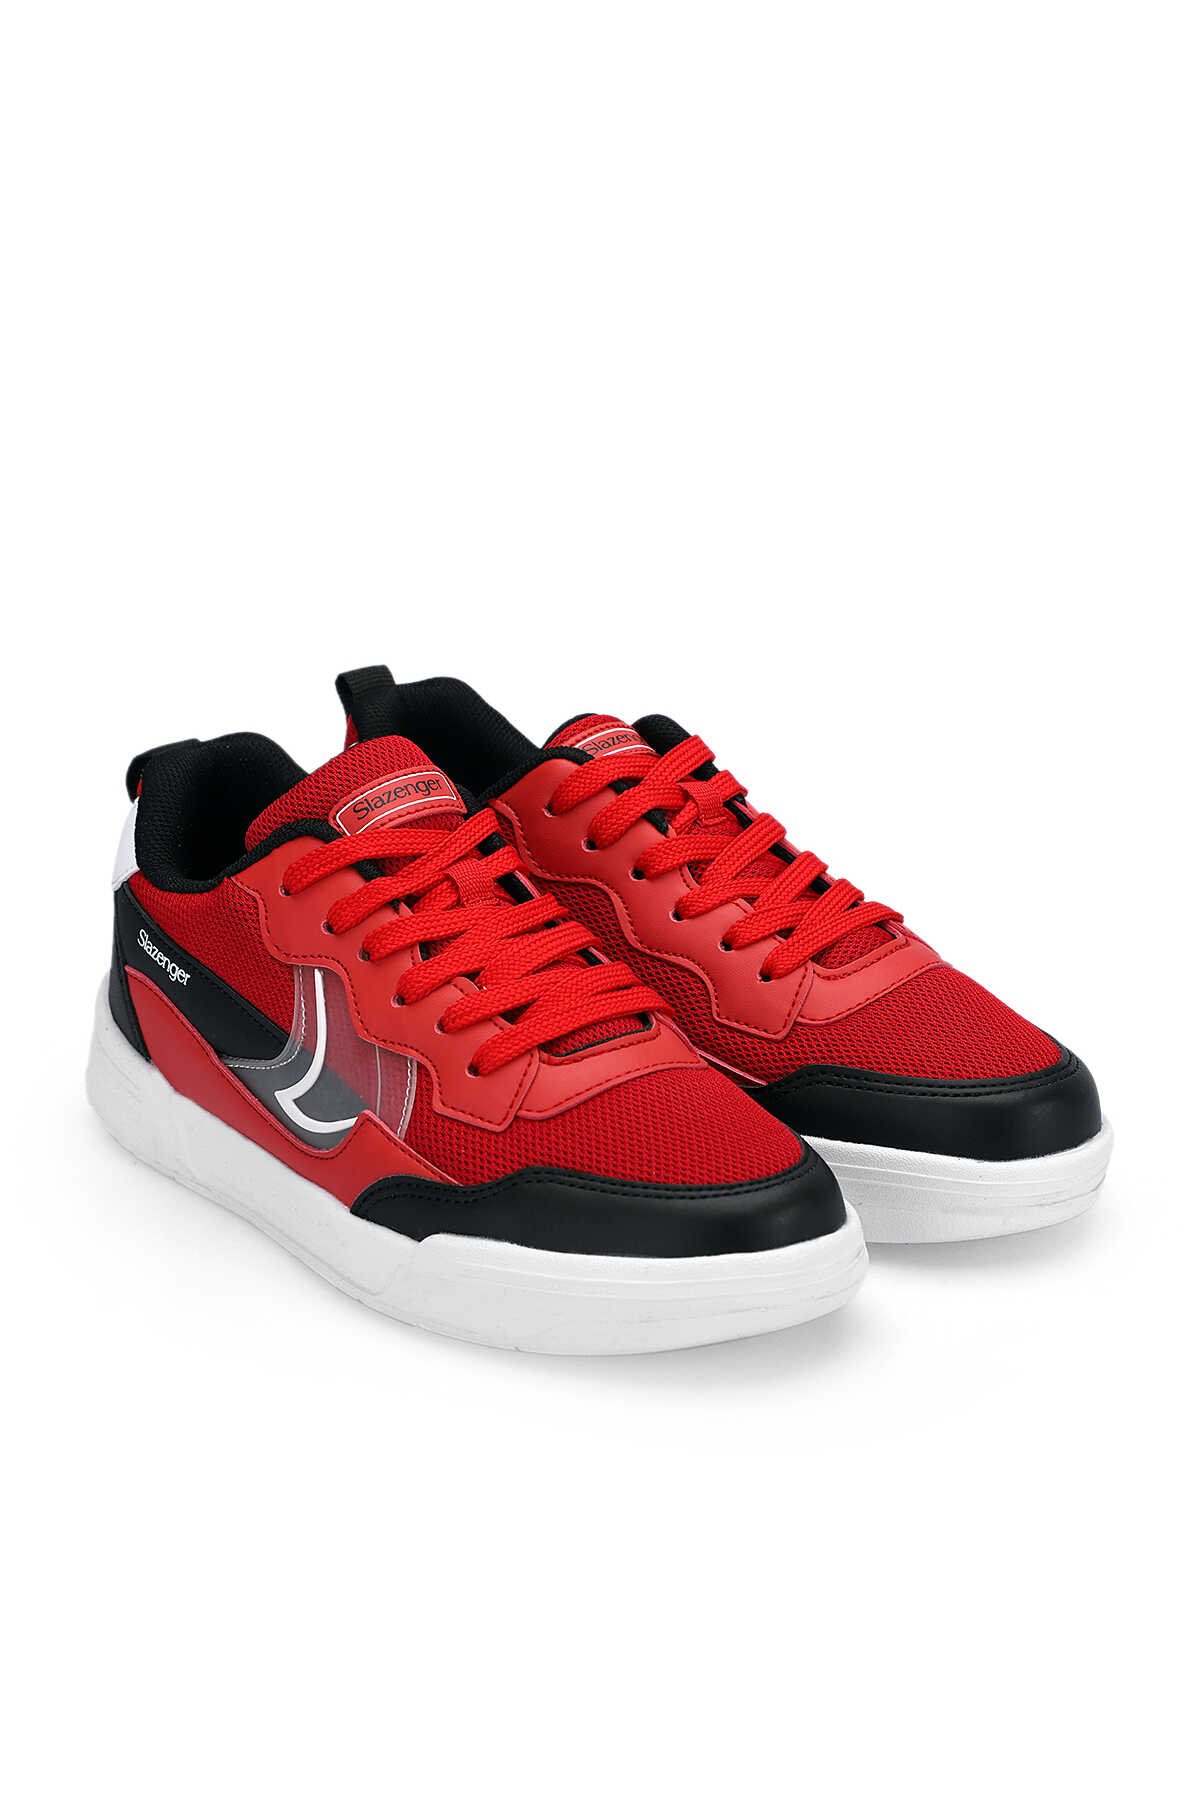 BARBRO Sneaker Kadın Ayakkabı Kırmızı